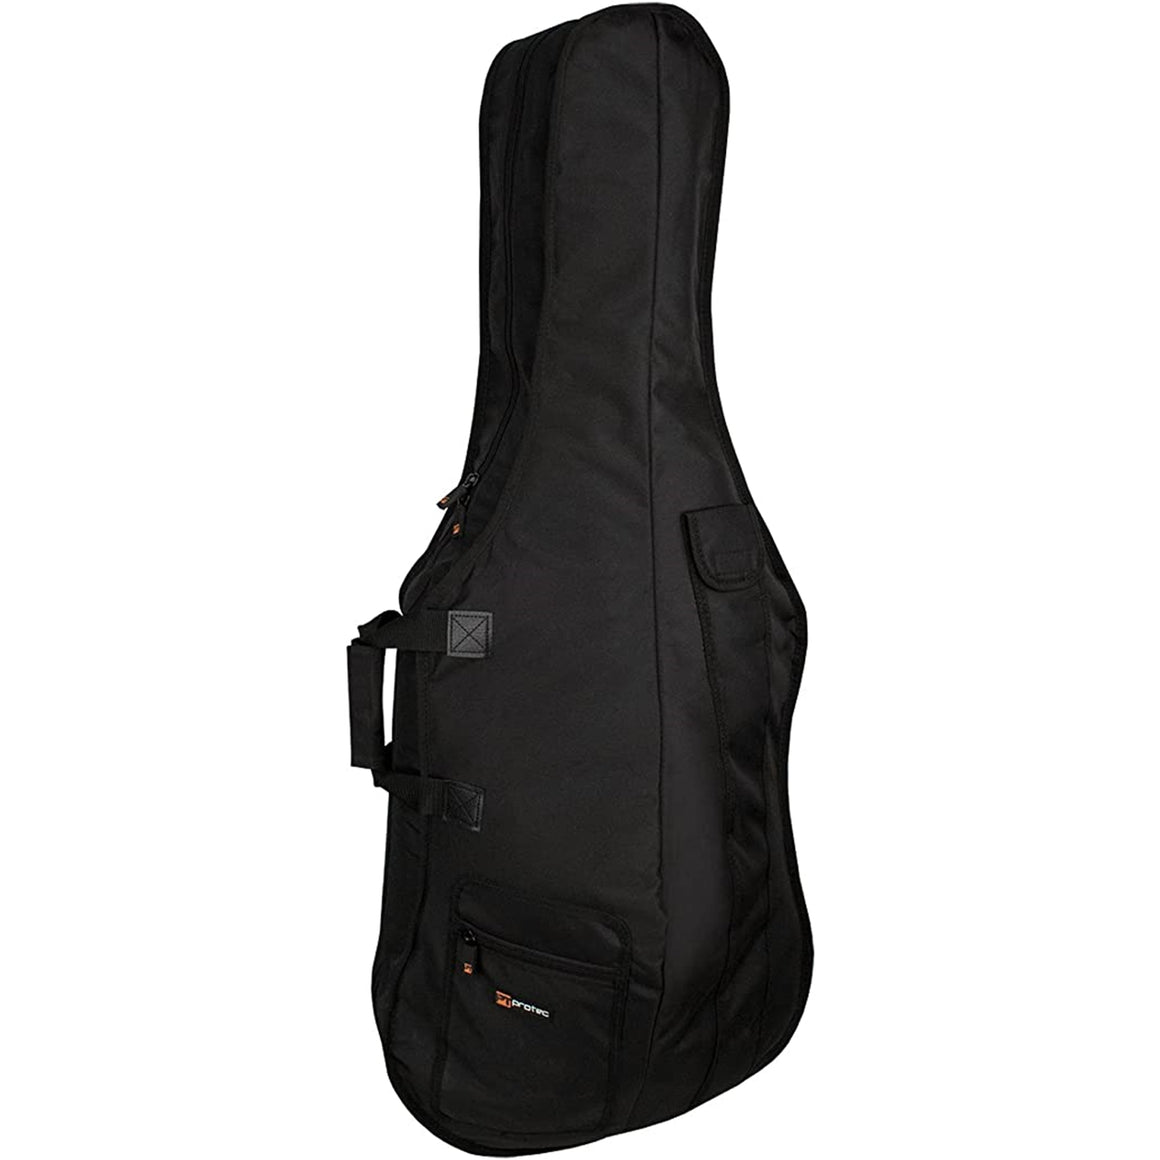 Protec C308E 1/2 Cello Bag